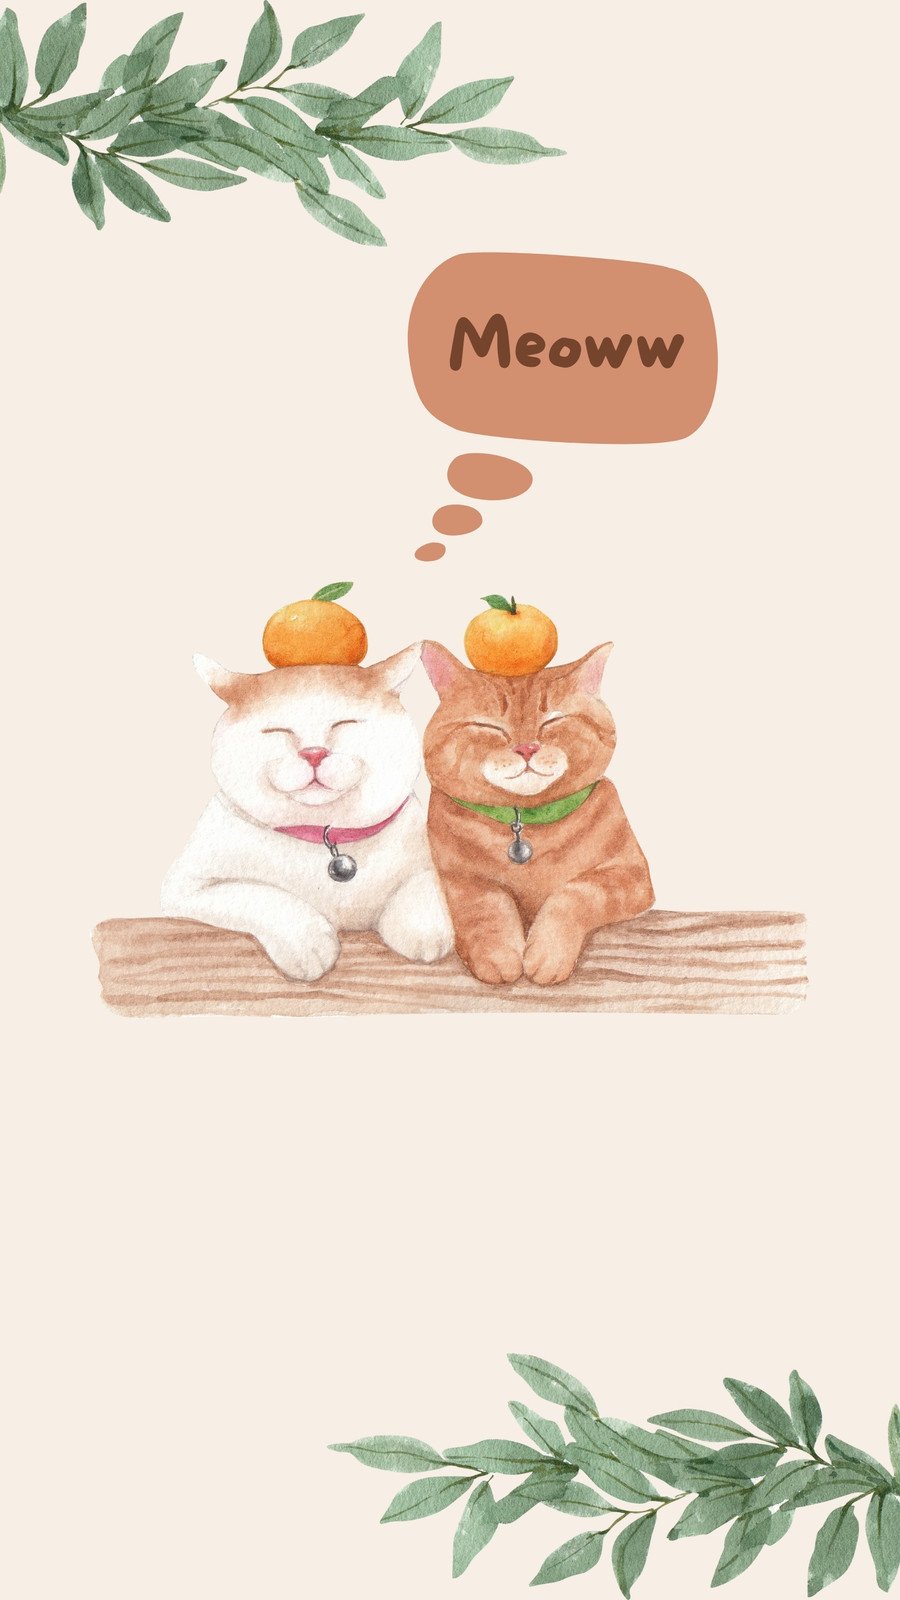 cute cat cartoon tumblr wallpaper